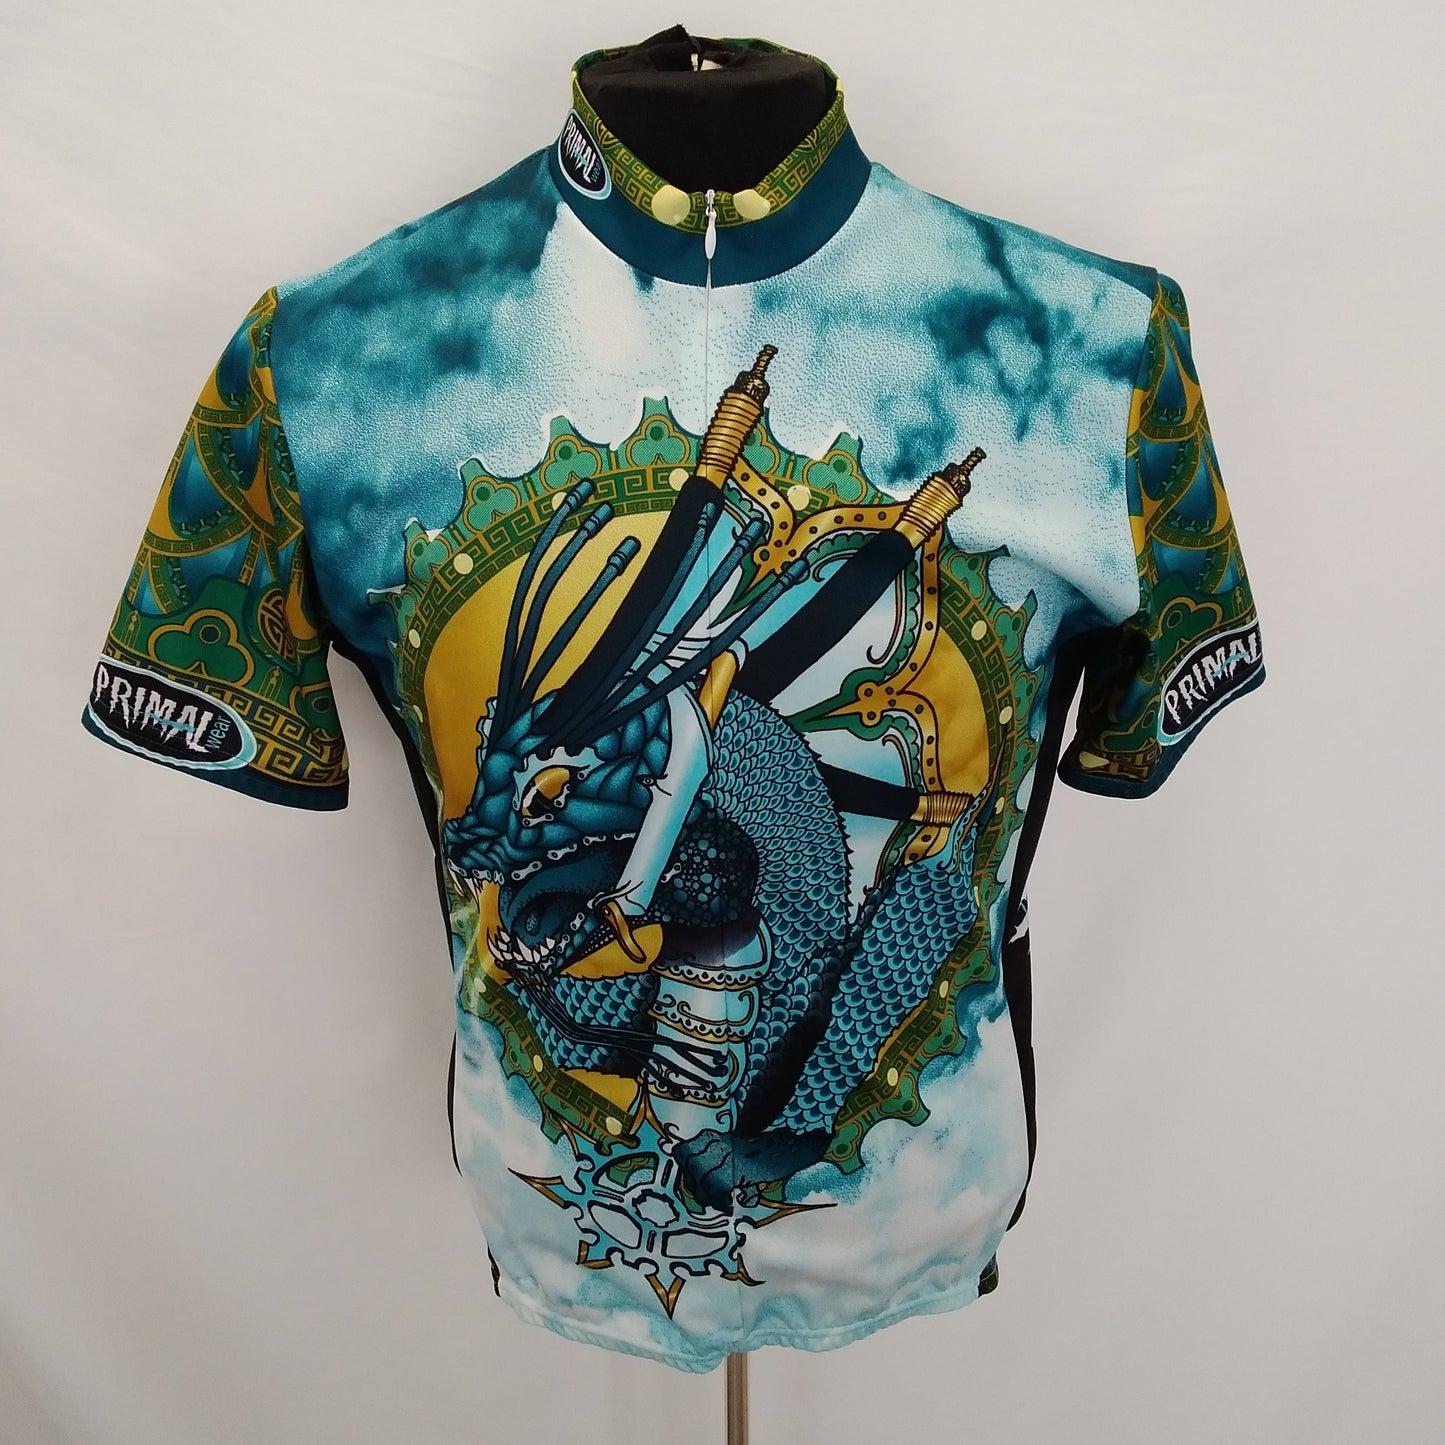 Primal Wear Blue Dragon 3/4 Zip Short Sleeve Cycling Jersey - Men’s L